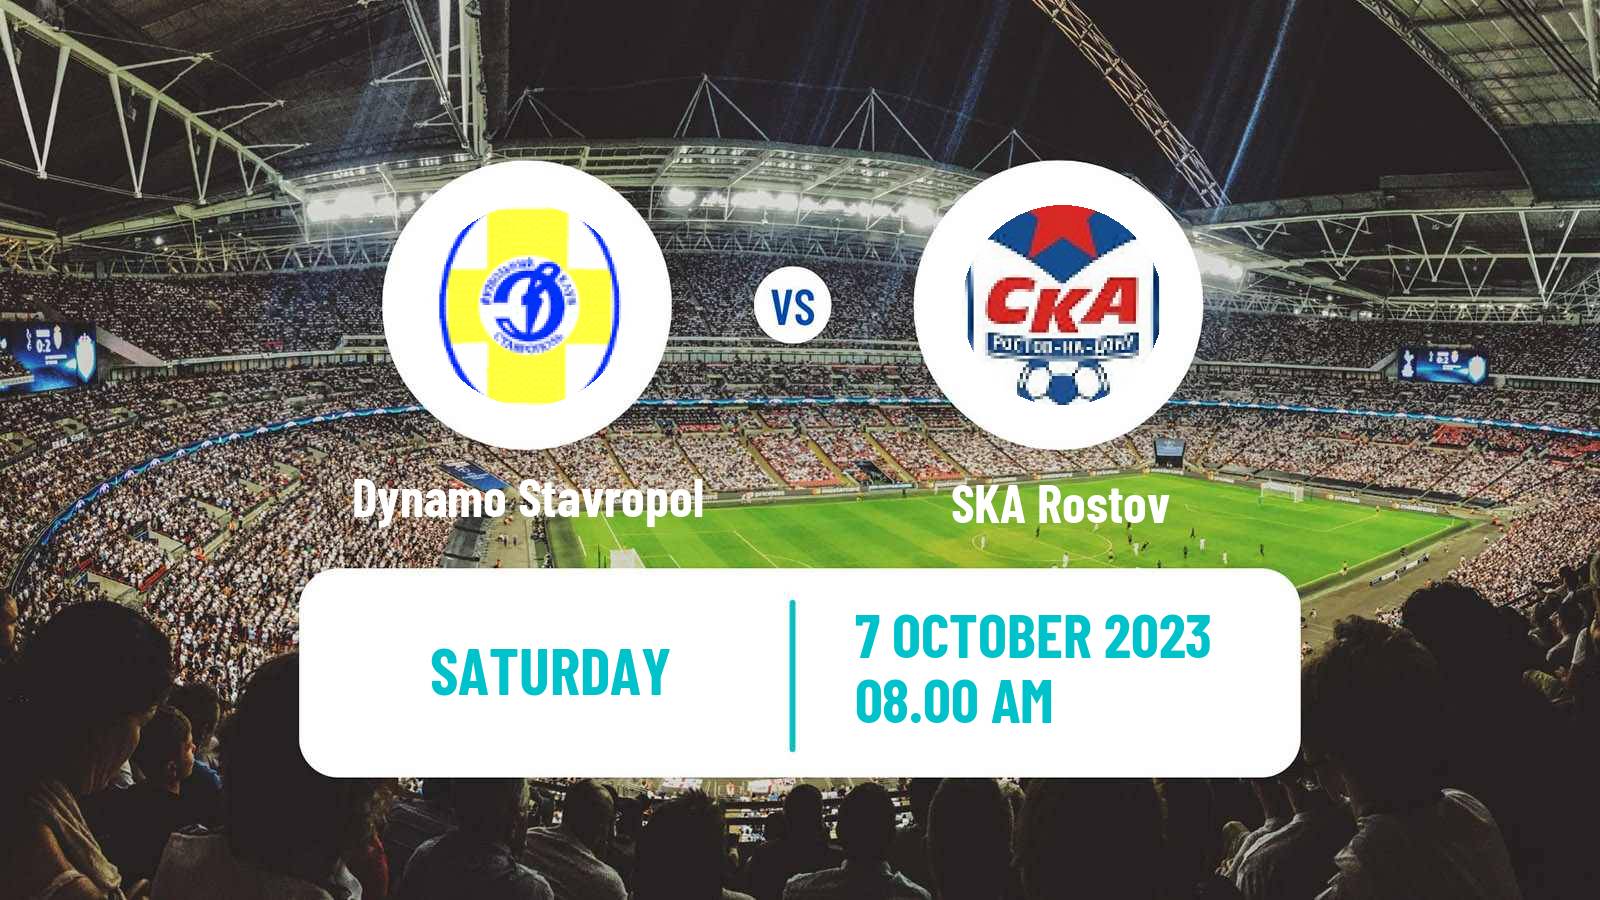 Soccer FNL 2 Division B Group 1 Dynamo Stavropol - SKA Rostov